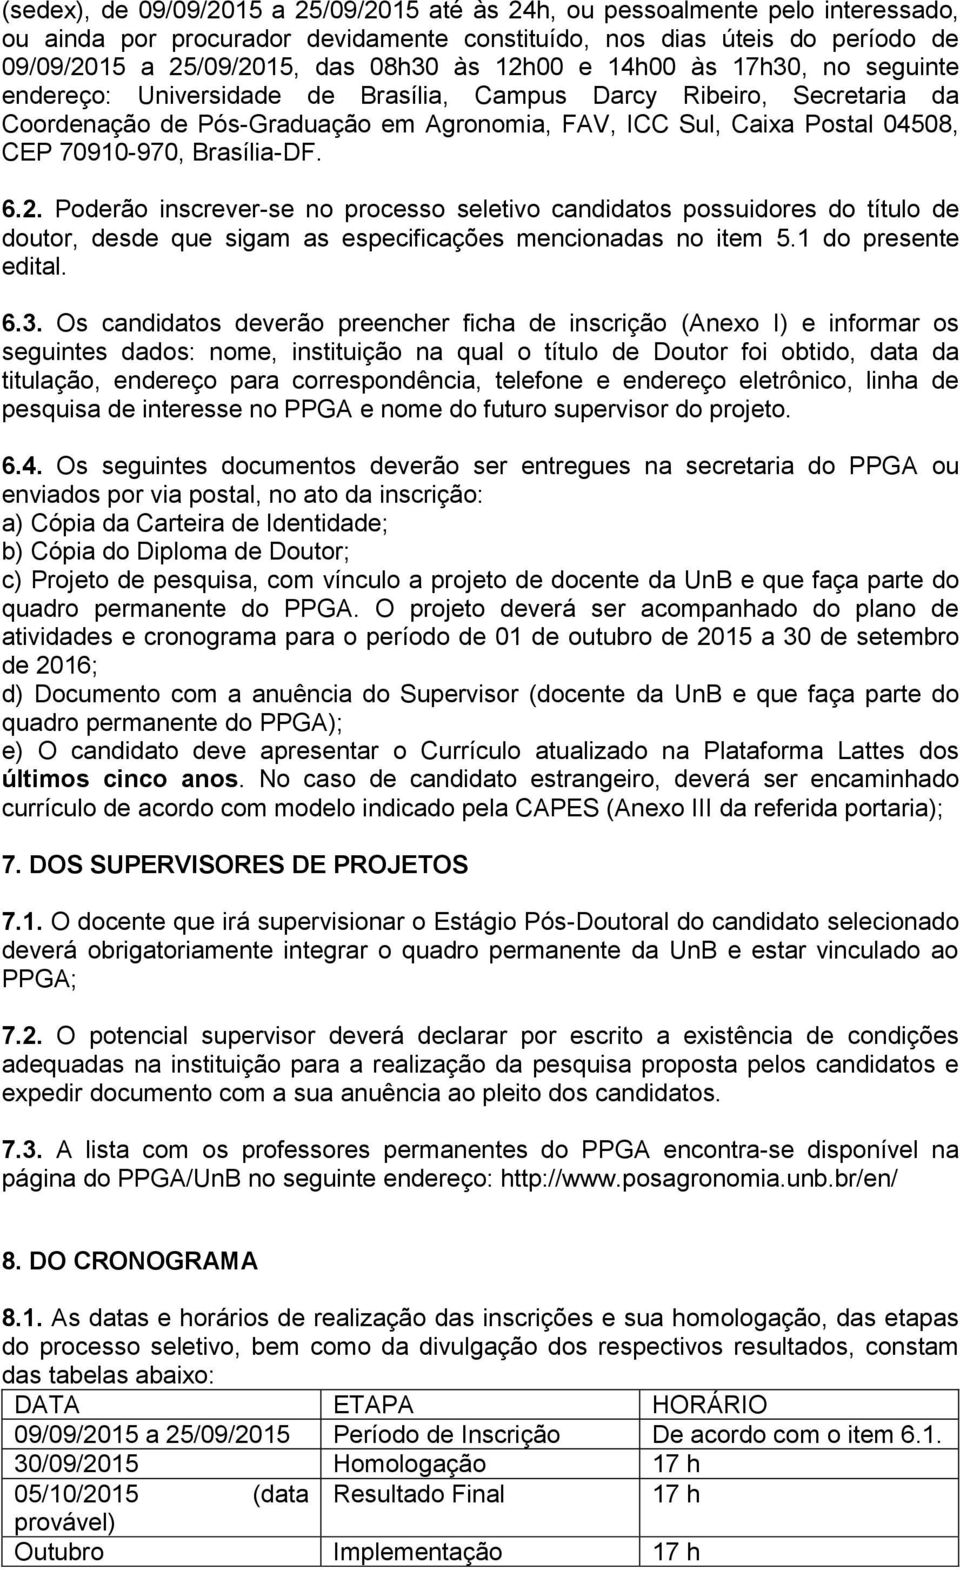 Brasília-DF. 6.2. Poderão inscrever-se no processo seletivo candidatos possuidores do título de doutor, desde que sigam as especificações mencionadas no item 5.1 do presente edital. 6.3.